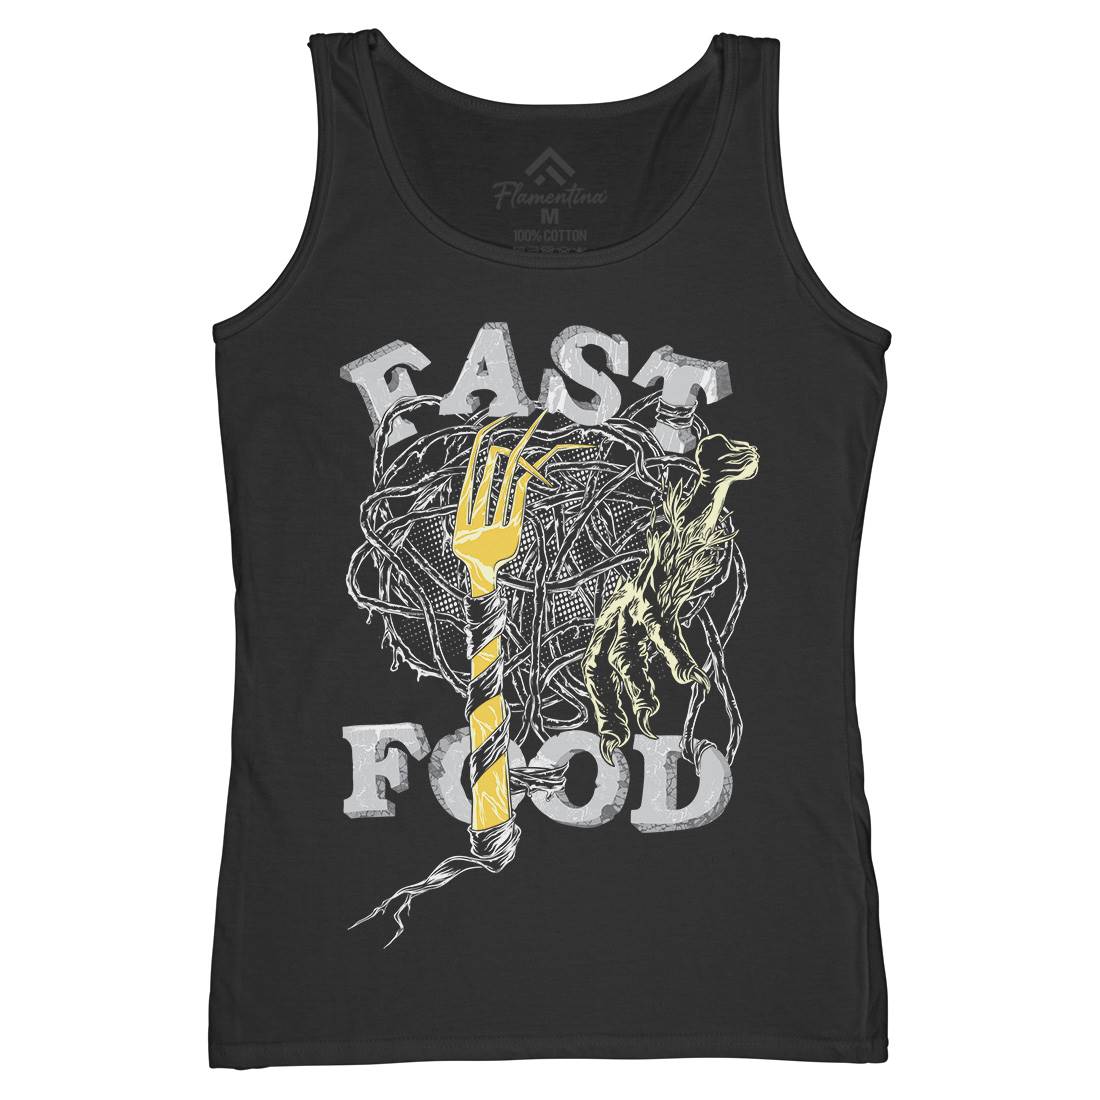 Fast Womens Organic Tank Top Vest Food C931